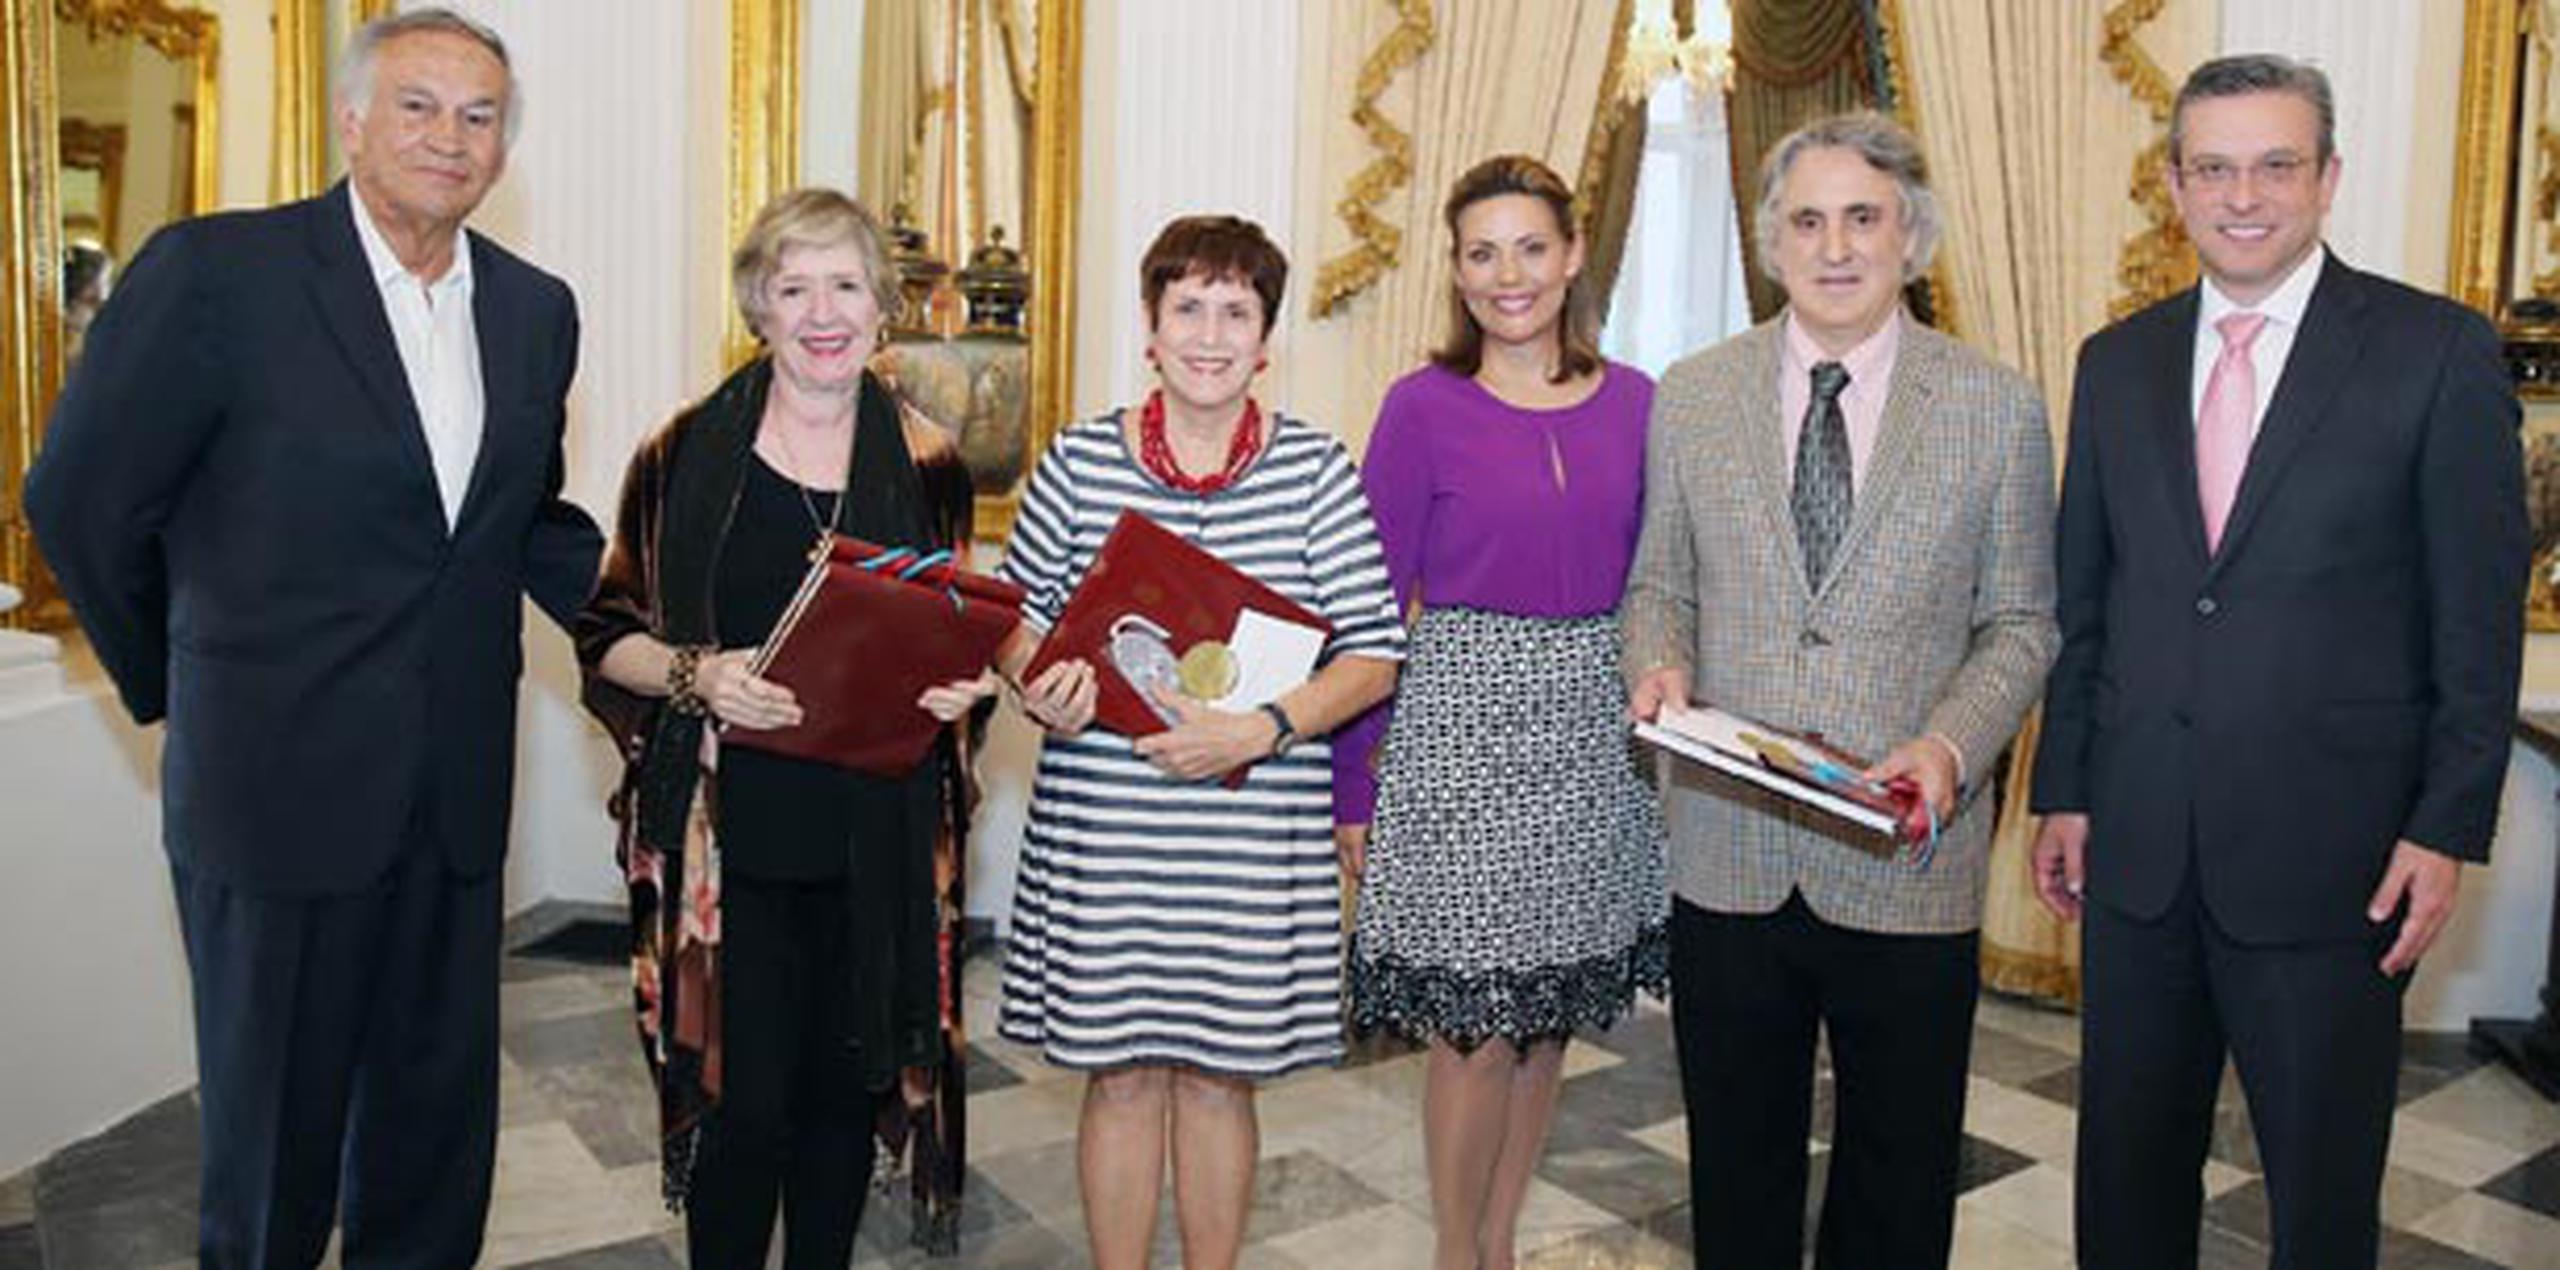 El evento estuvo enmarcado en la conmemoración del Día Internacional de la Mujer Trabajadora y la próxima celebración del Congreso Internacional de la Lengua Española. (Suministrada)